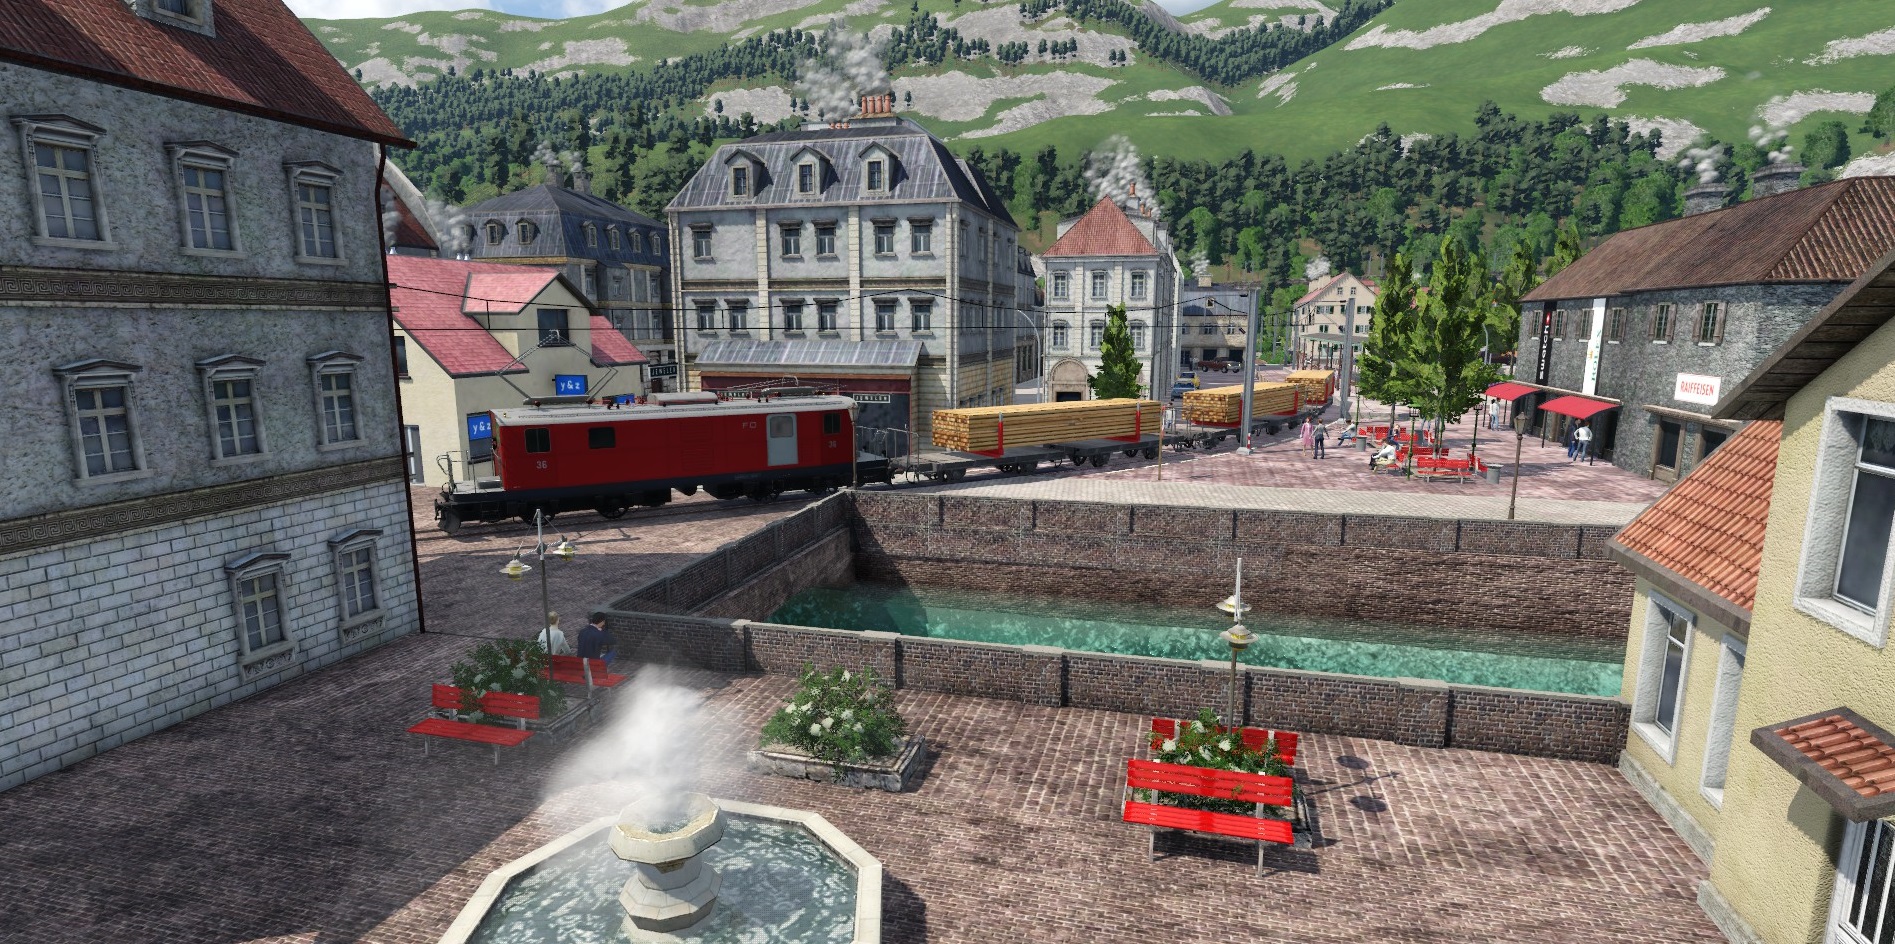 Güterverkehr durch die Altstadt